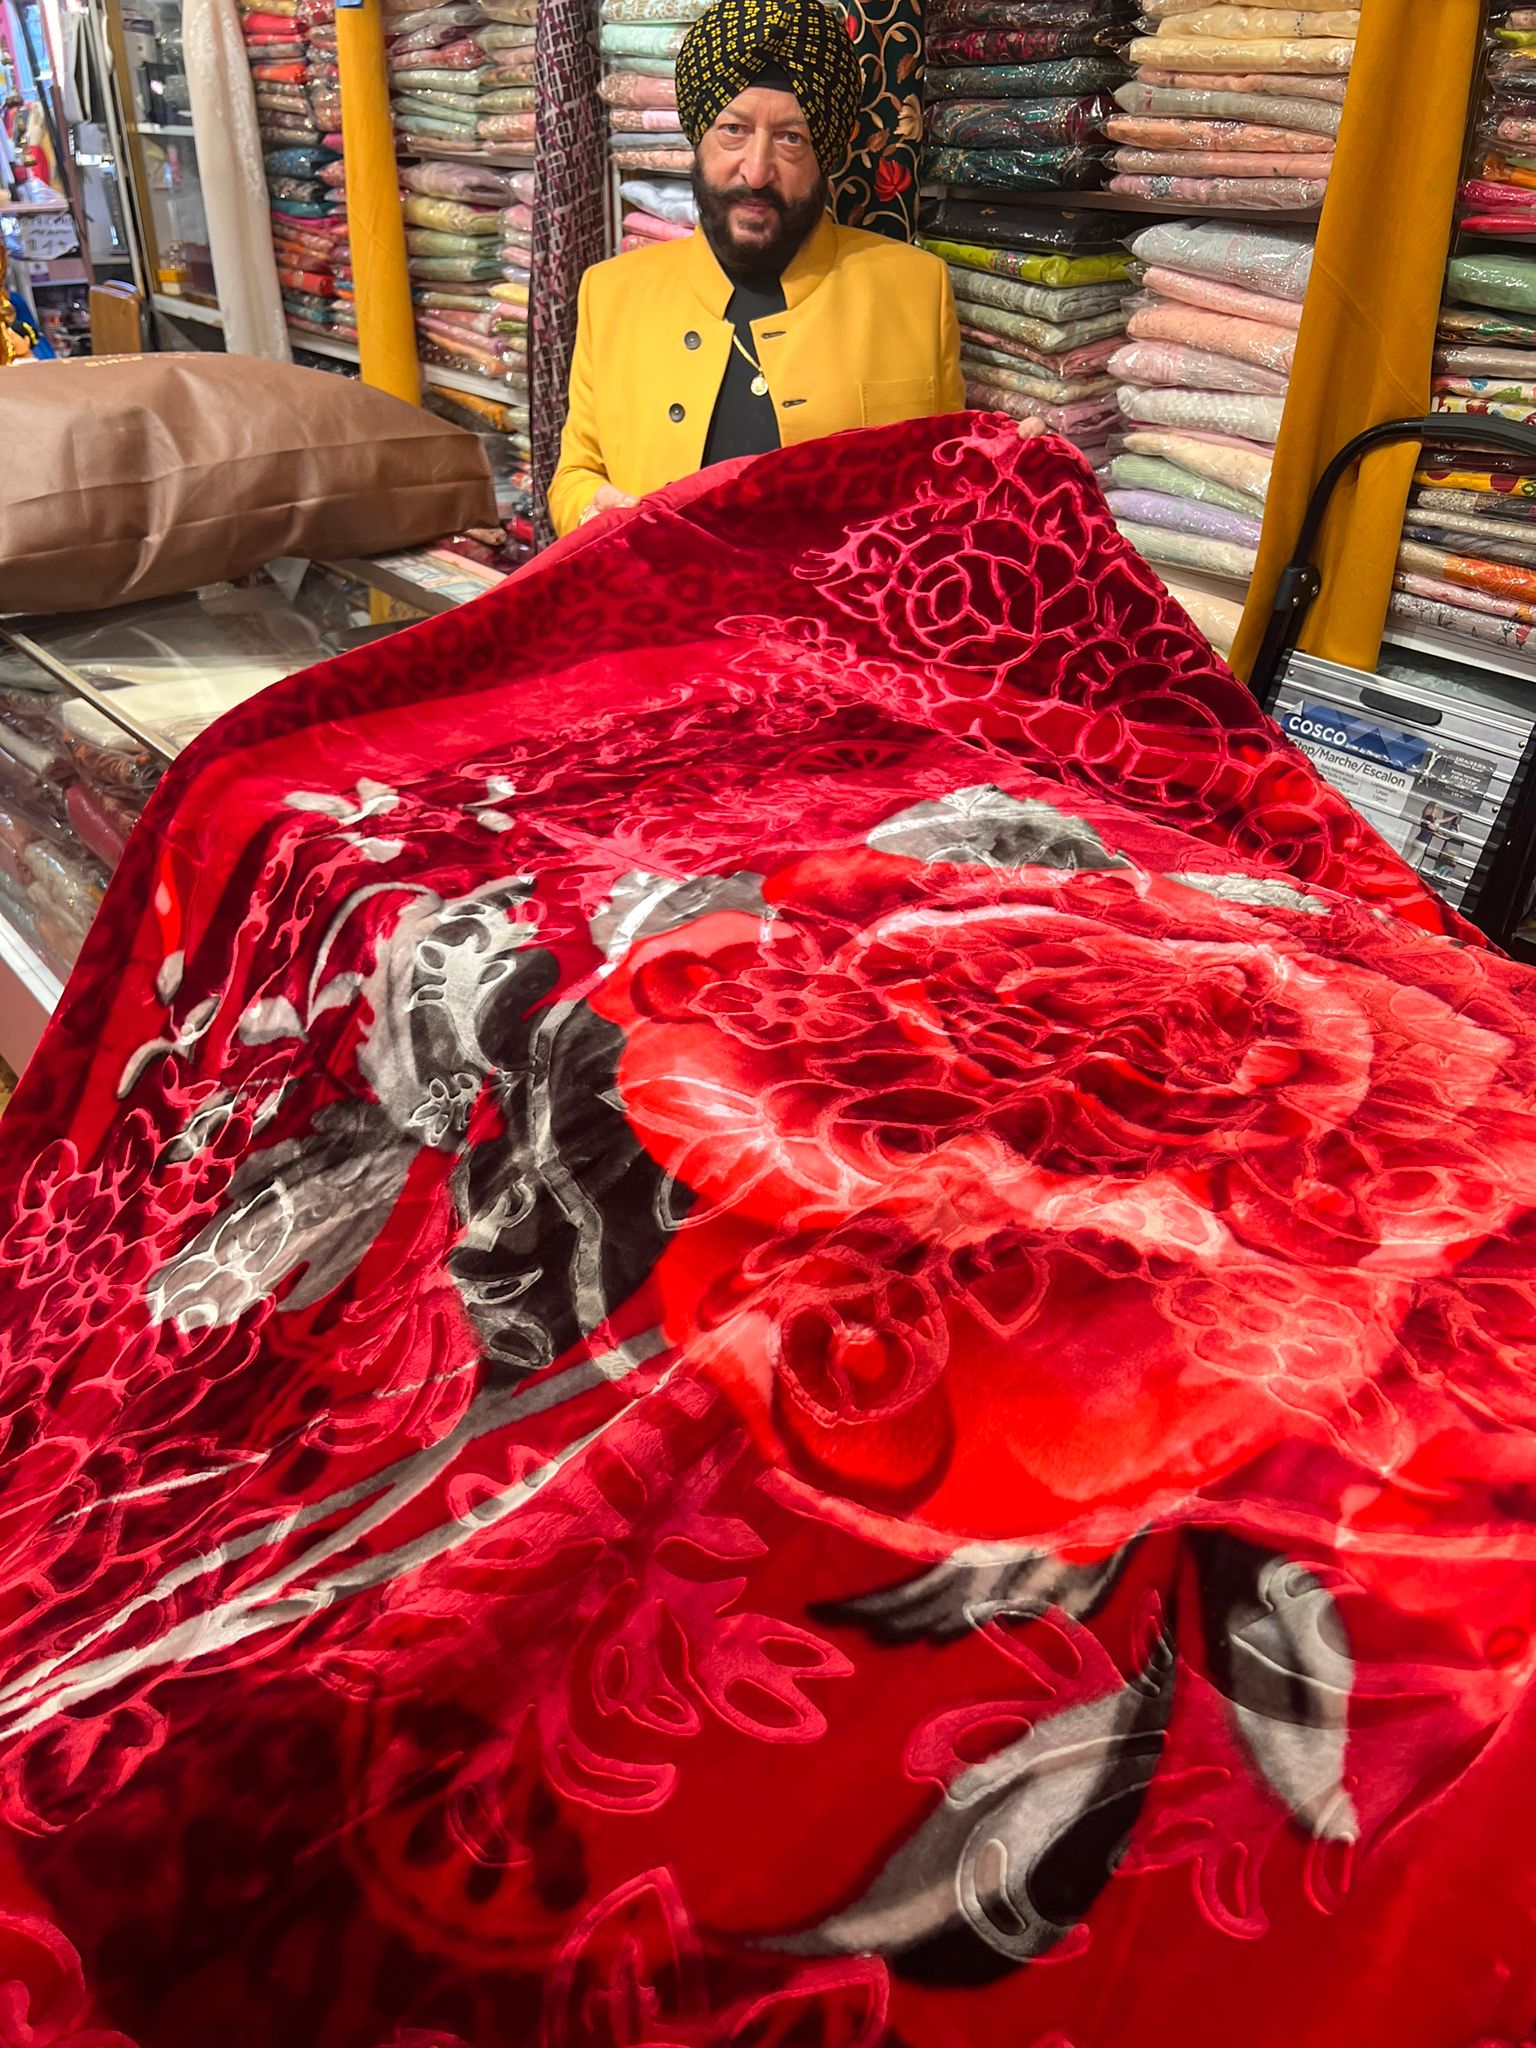 Red Rose Kuki Blanket